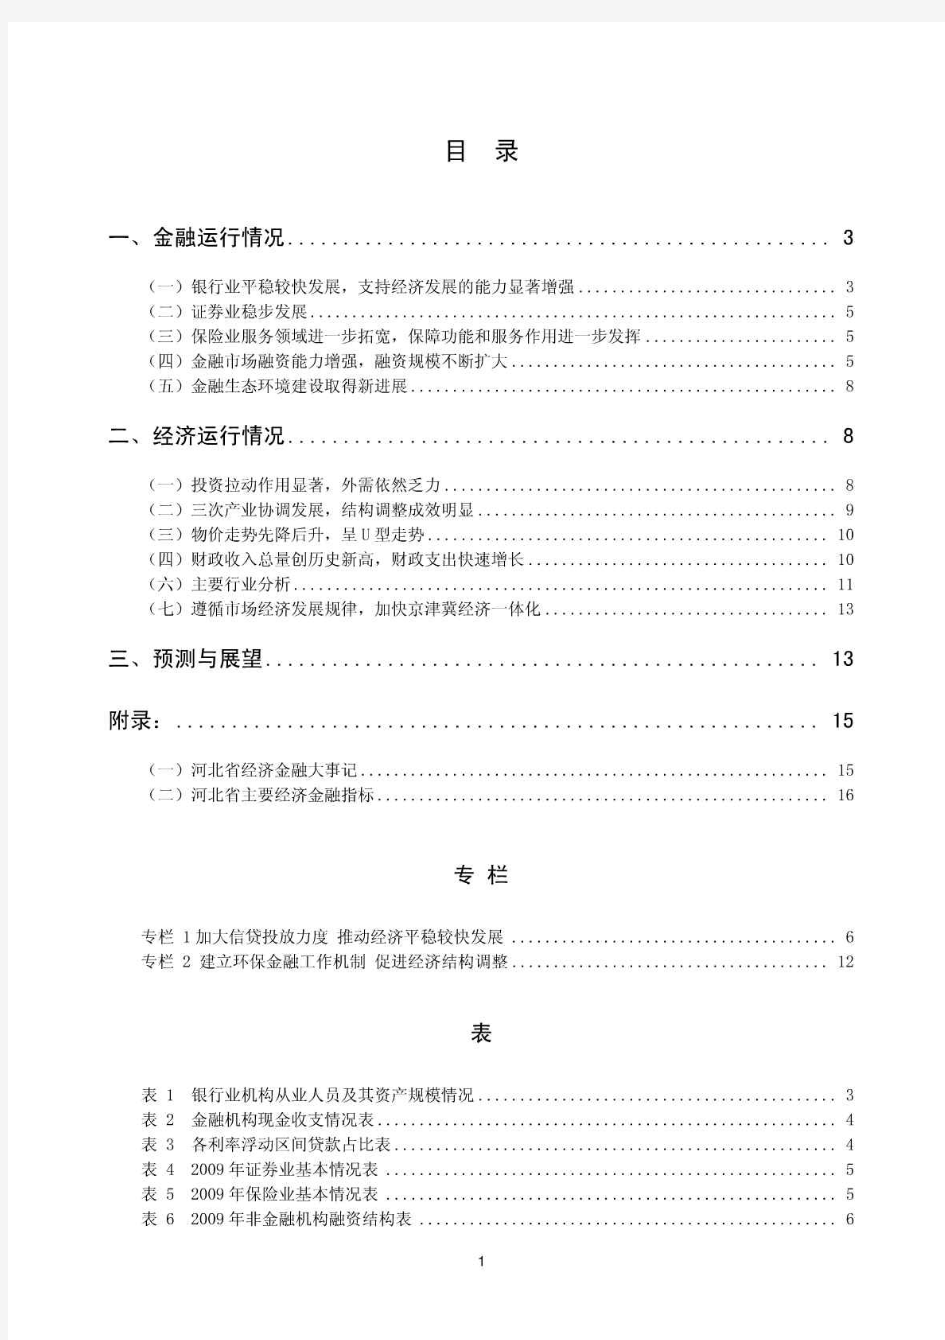 2010年河北省金融运行报告